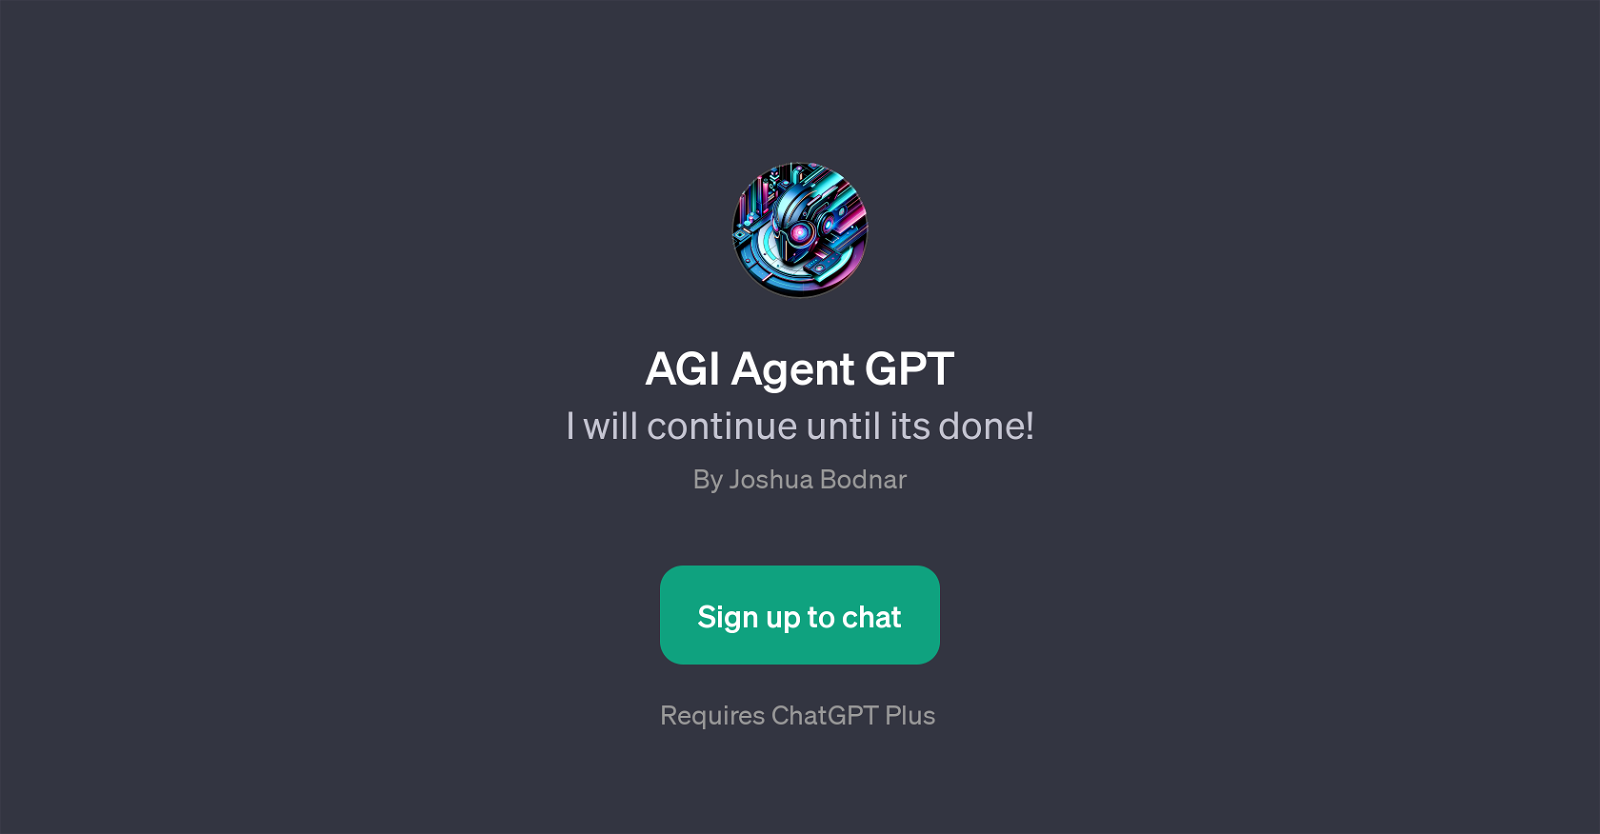 AGI Agent GPT website